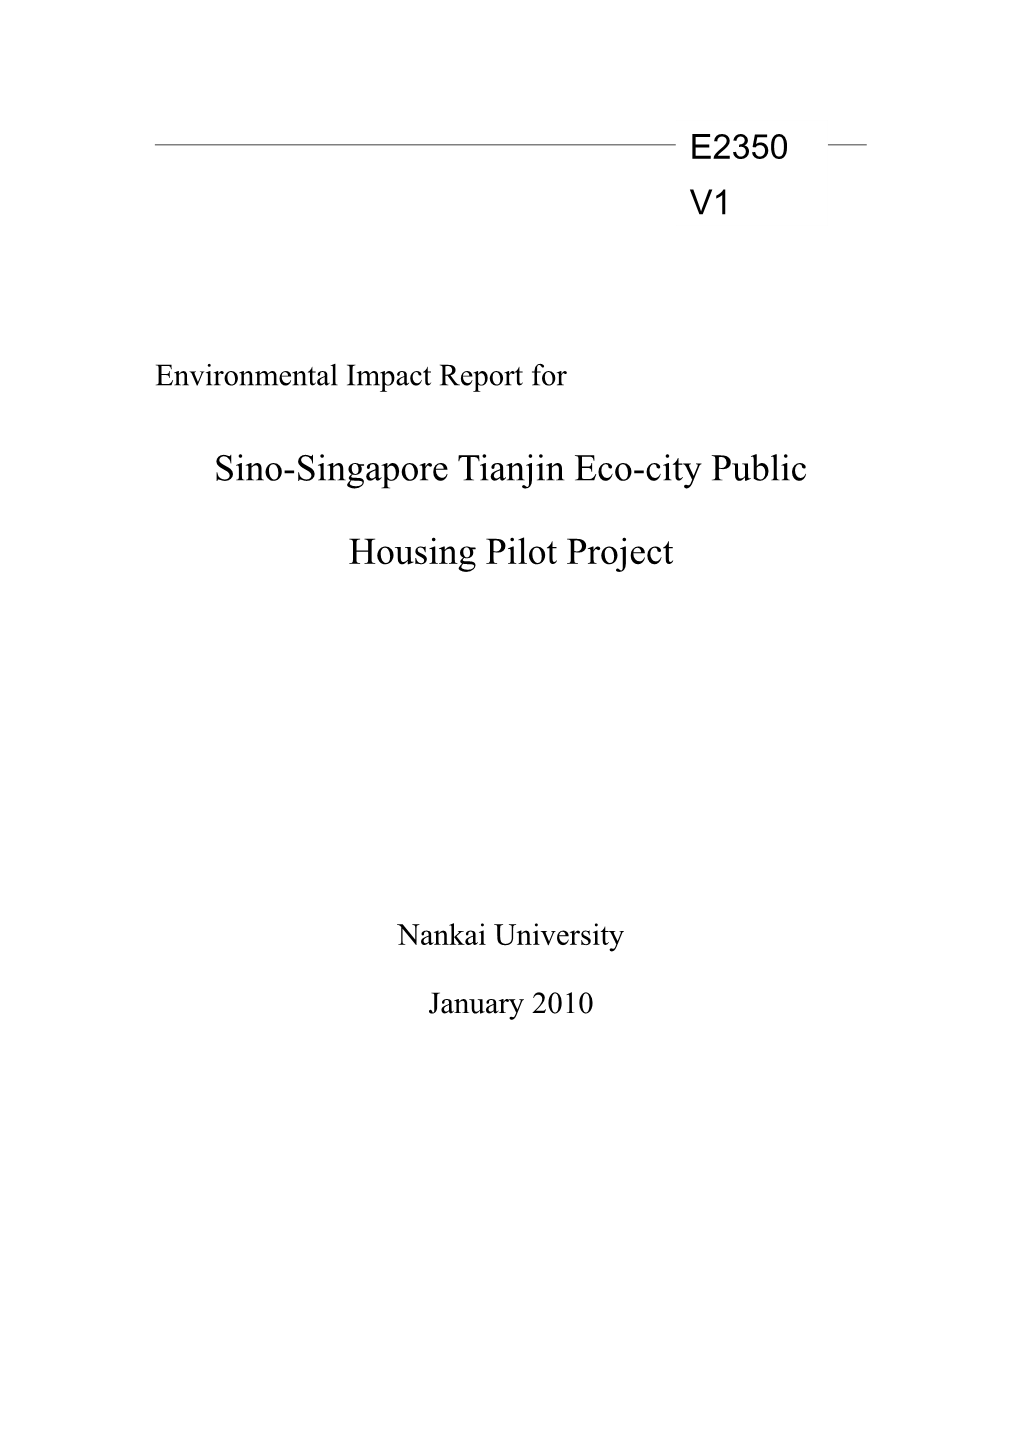 Sino-Singapore Tianjin Eco-City Public Housing Pilot Project